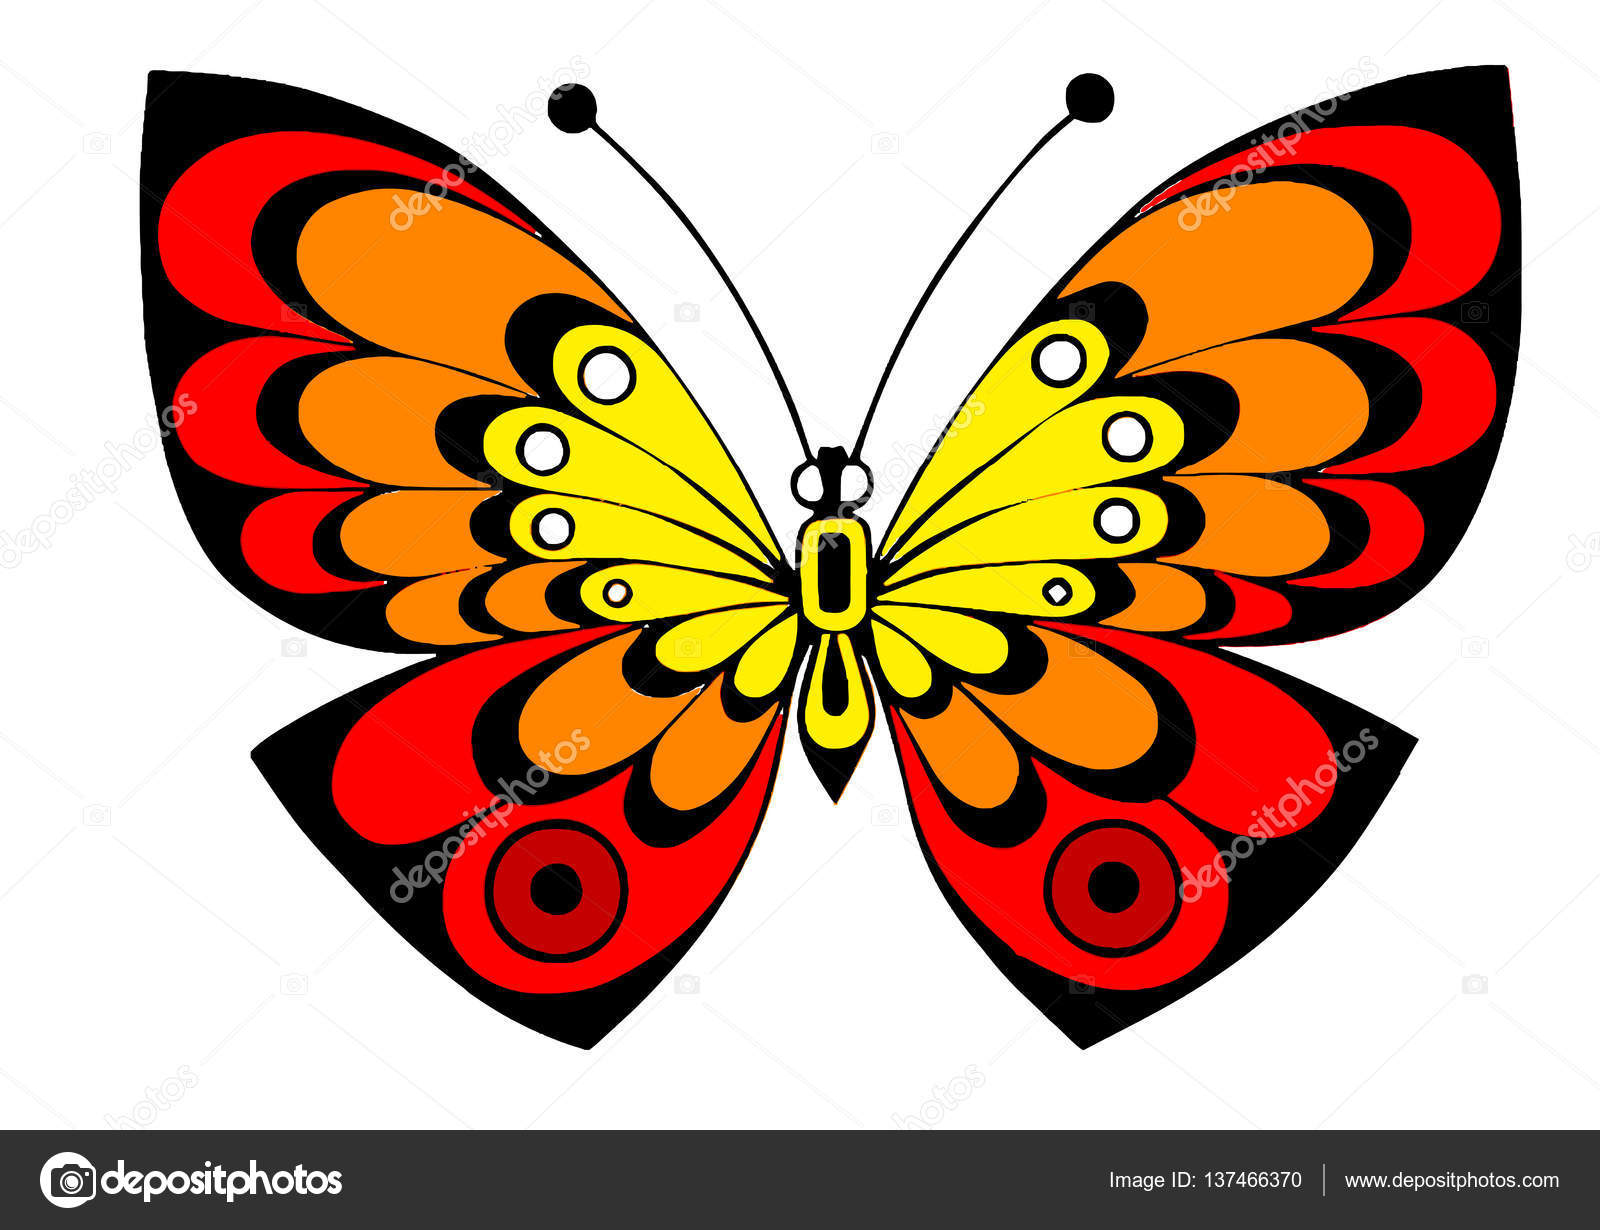 Yellow Red Orange Butterfly - HD Wallpaper 